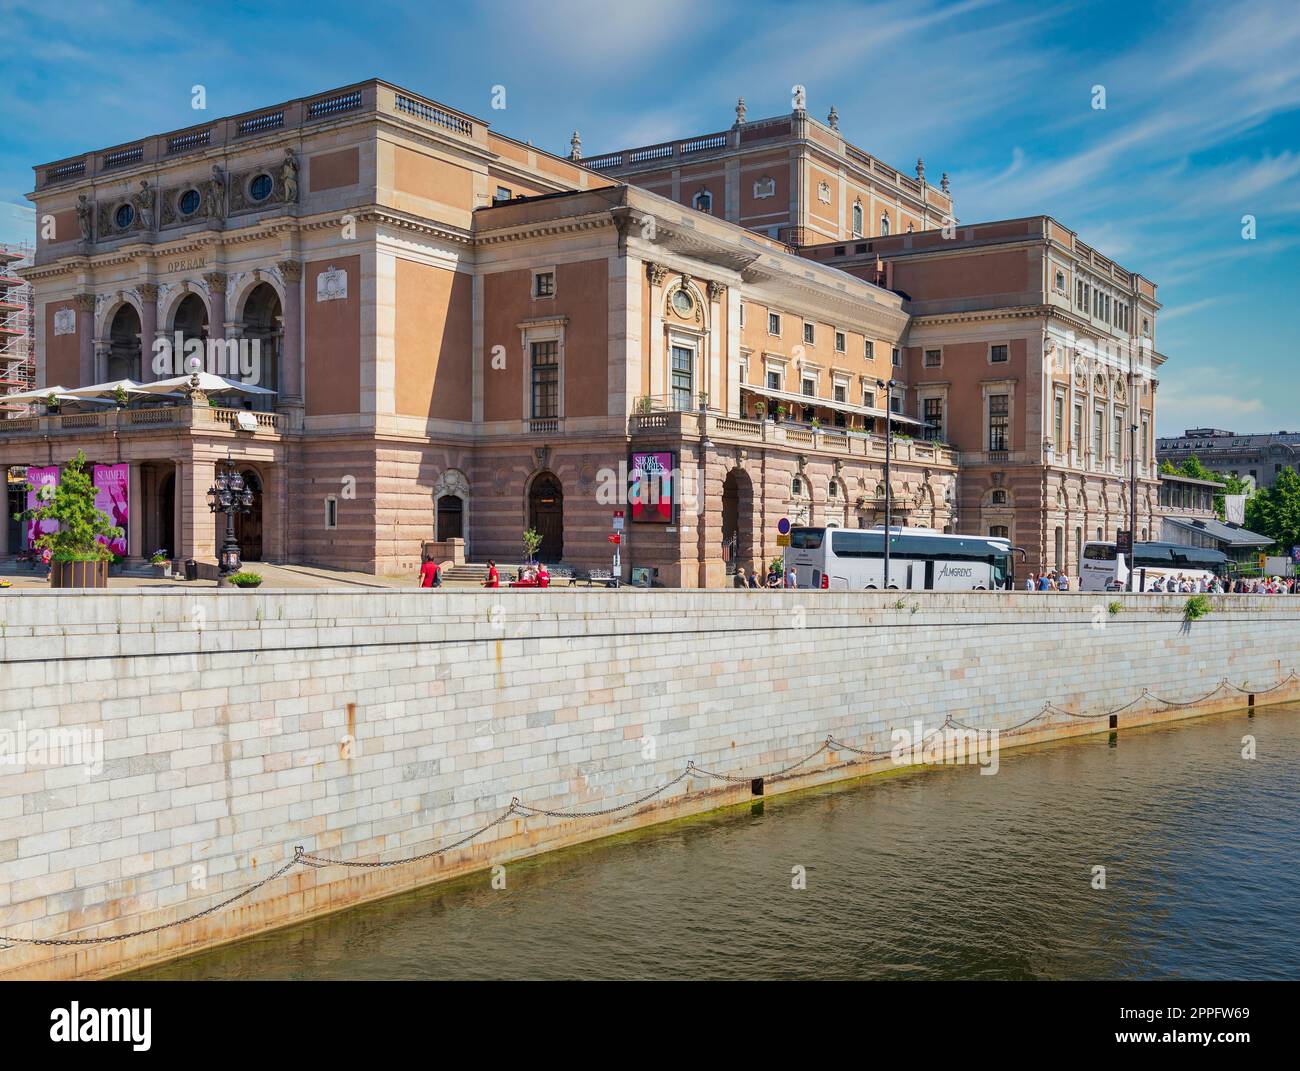 Royal Swedish Opera House, ou Kungliga Operan, situé dans le centre de la capitale suédoise Stockholm à Norrmalm Banque D'Images